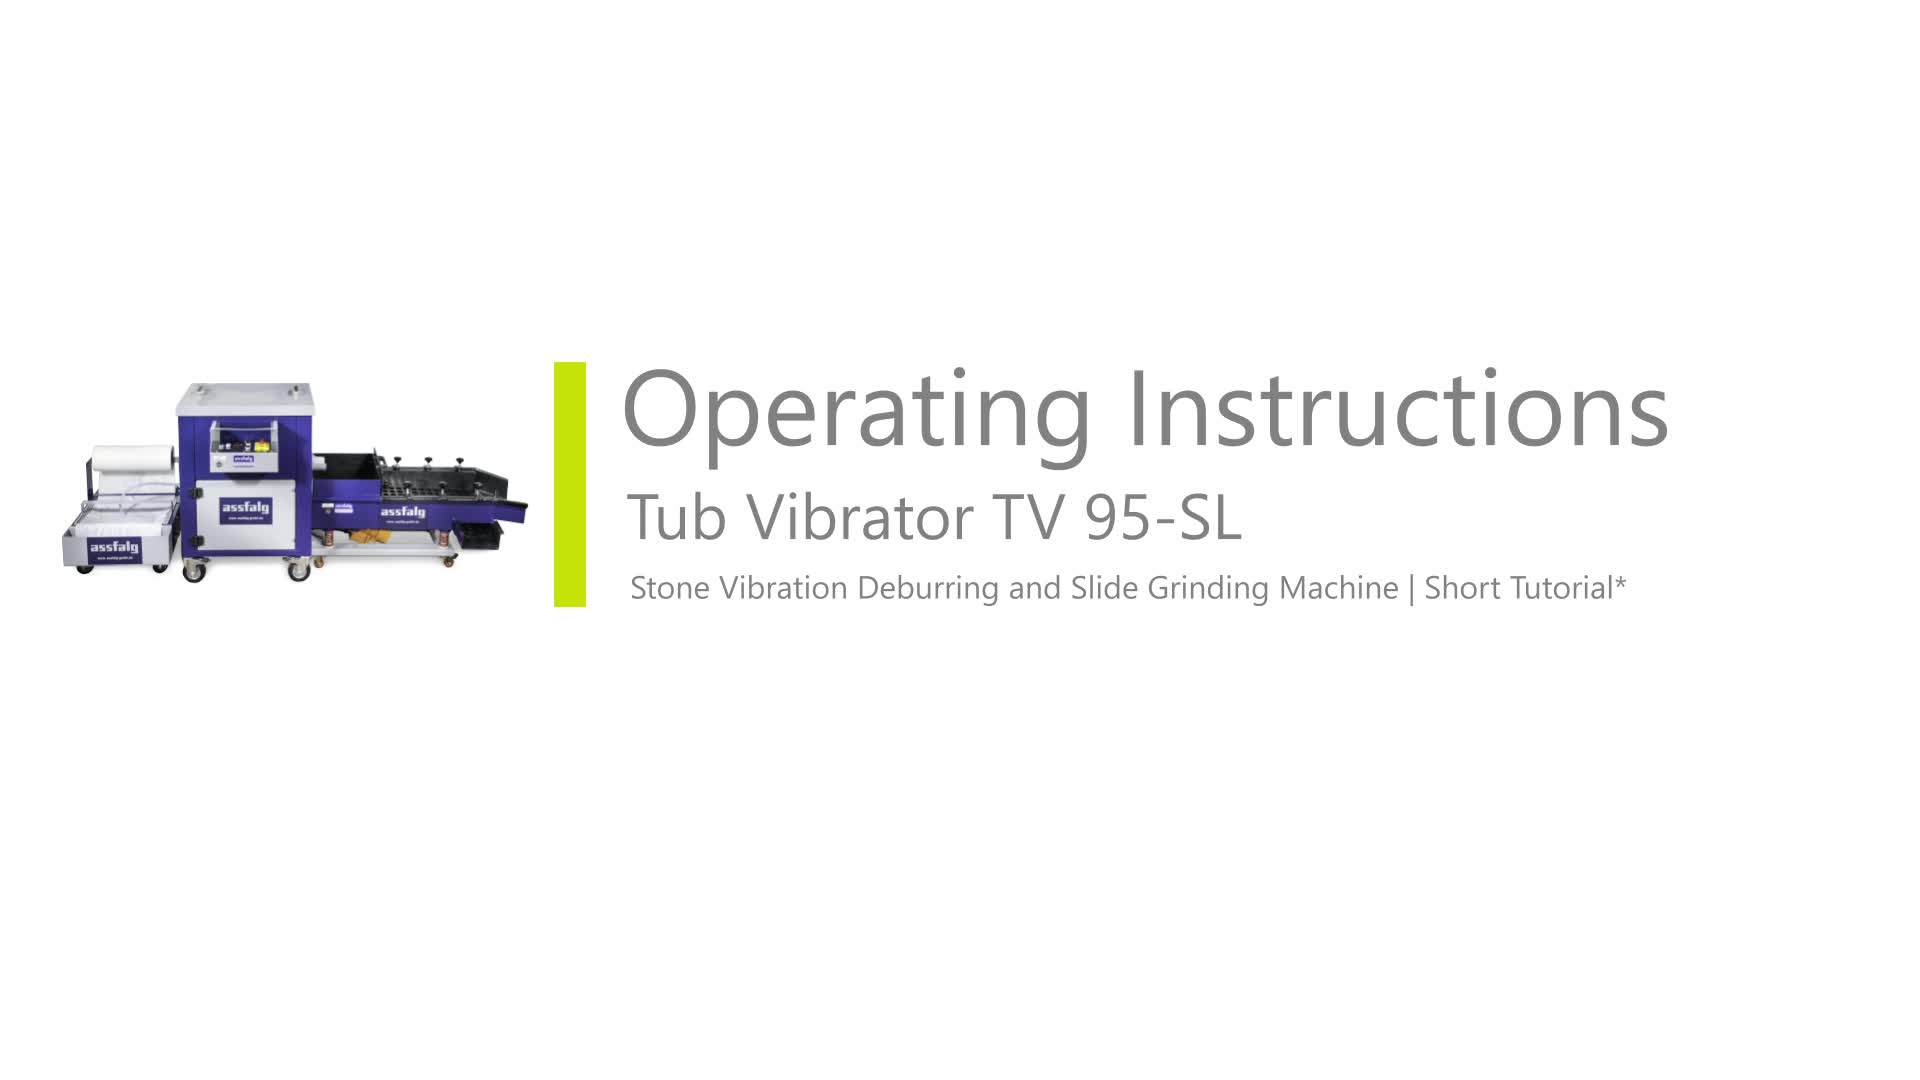 Slide Grinding Tub Vibrtator TV 95-SL